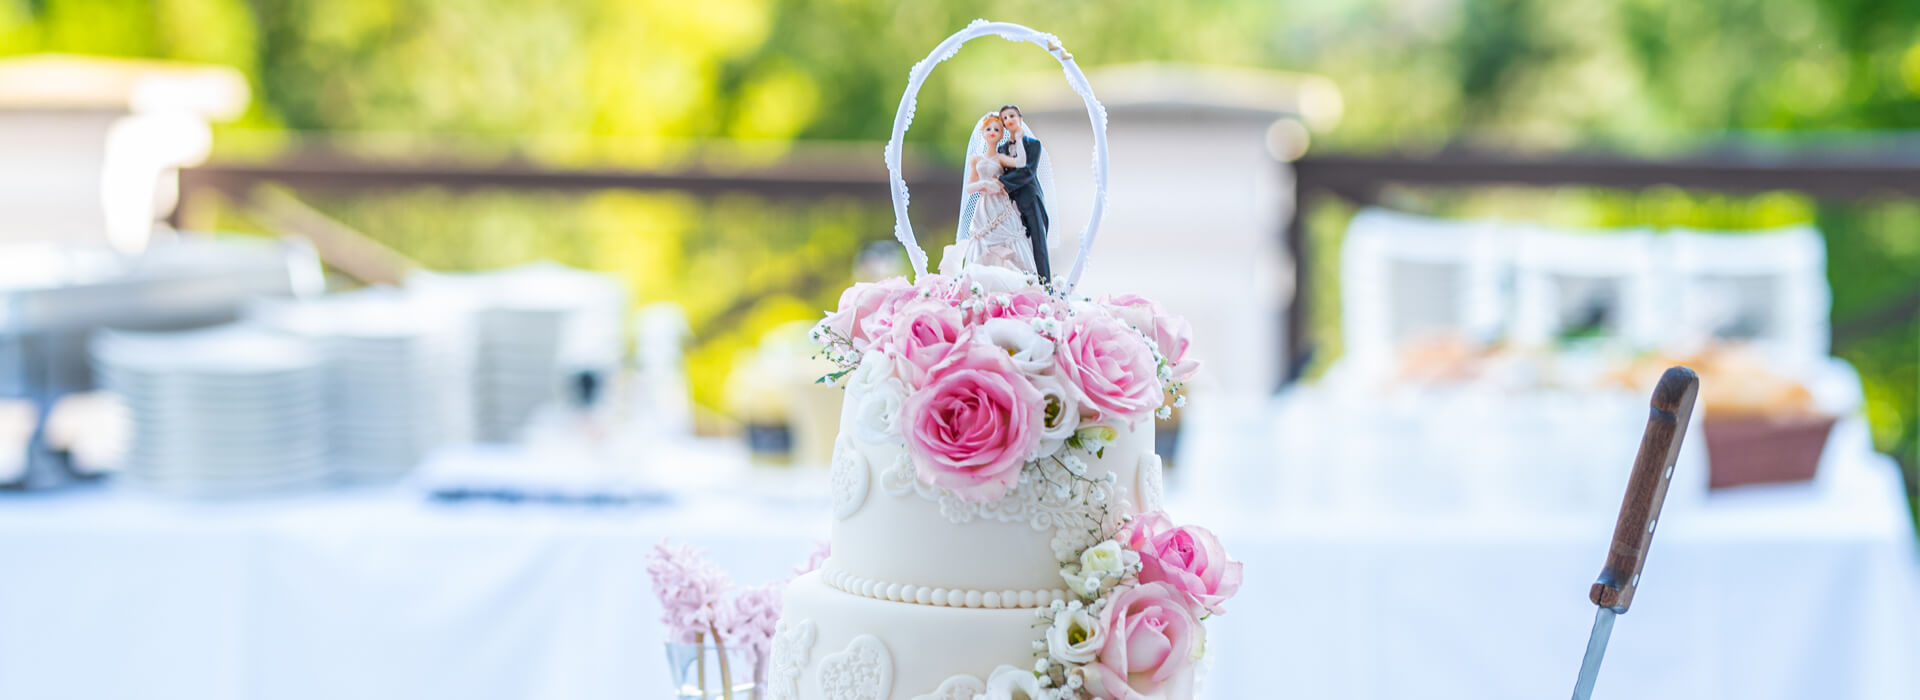 Svatební dorty, koláčky a výslužky